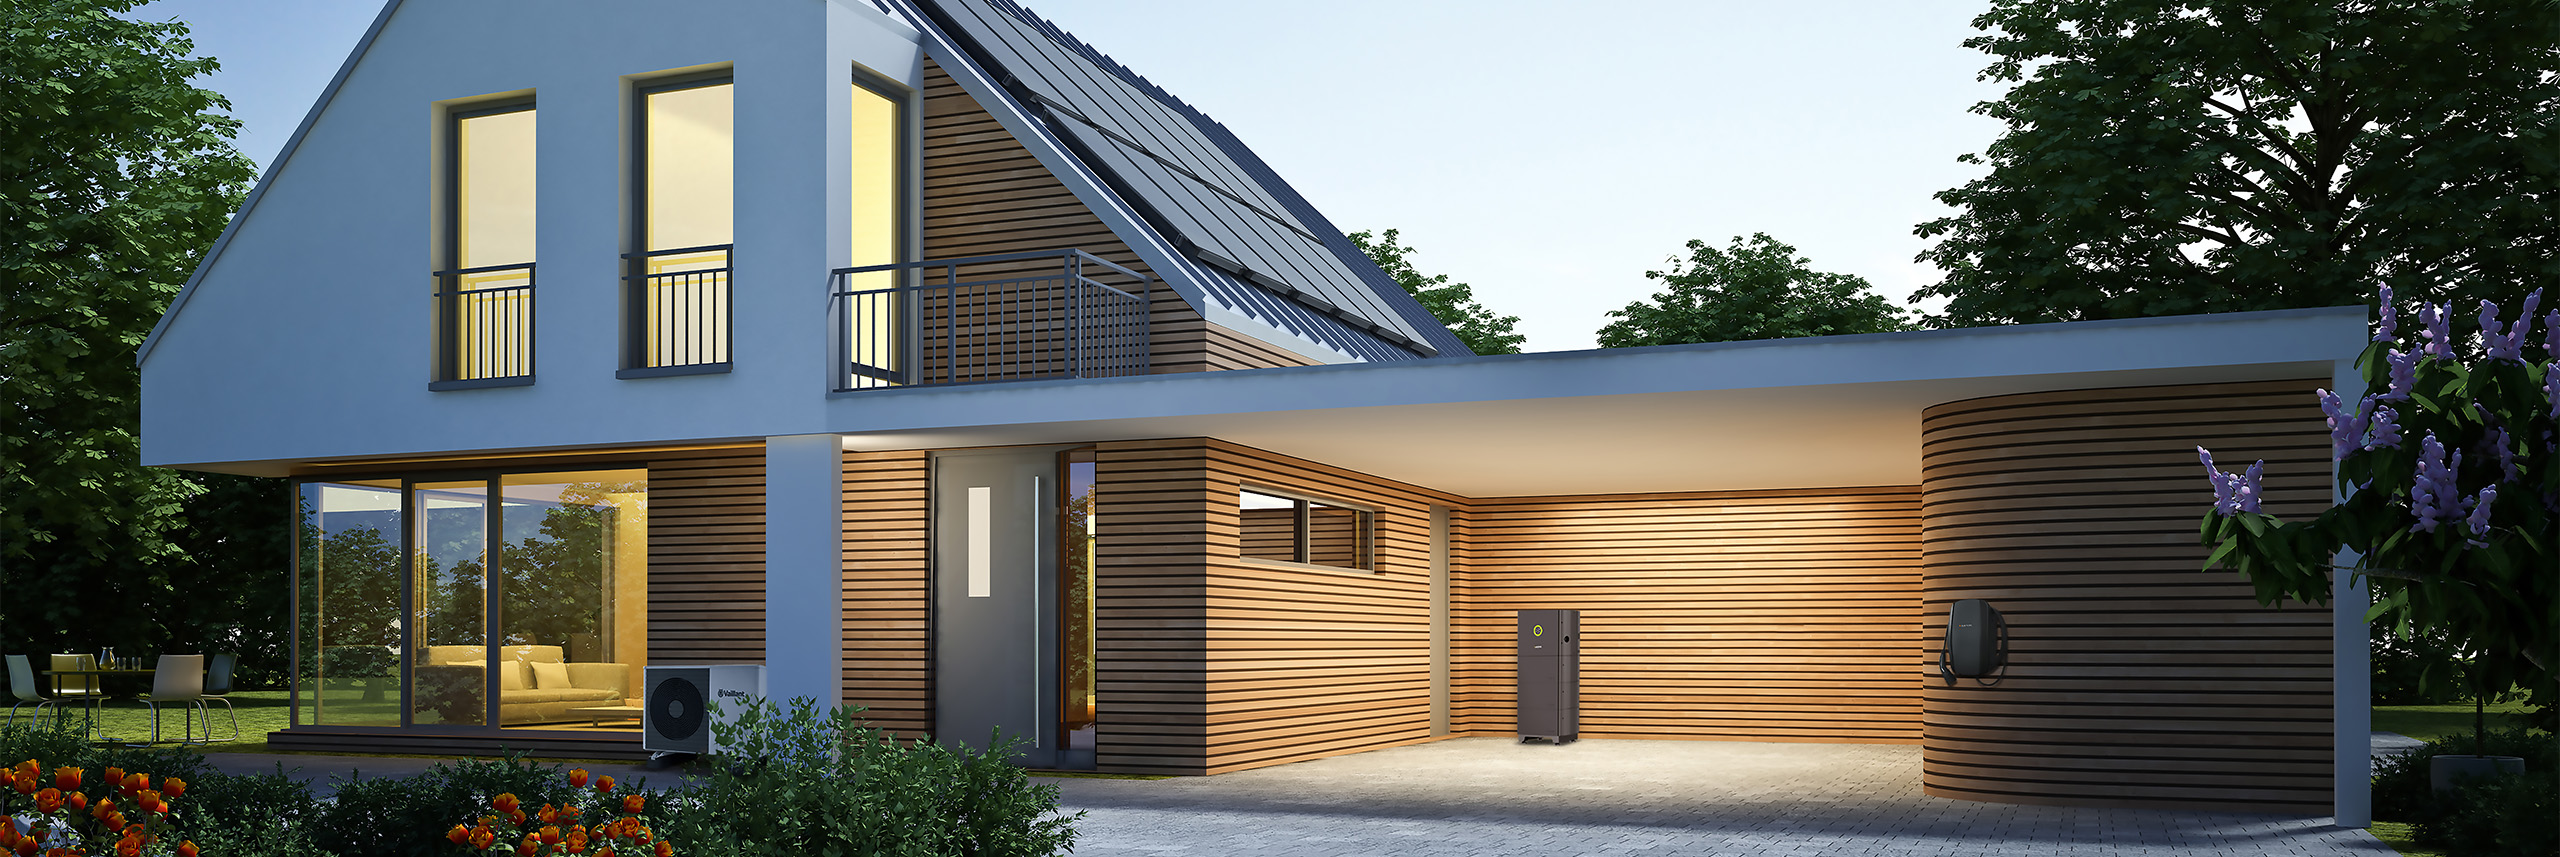 Einfamilienhaus mit Photovoltaik Komplettanlage